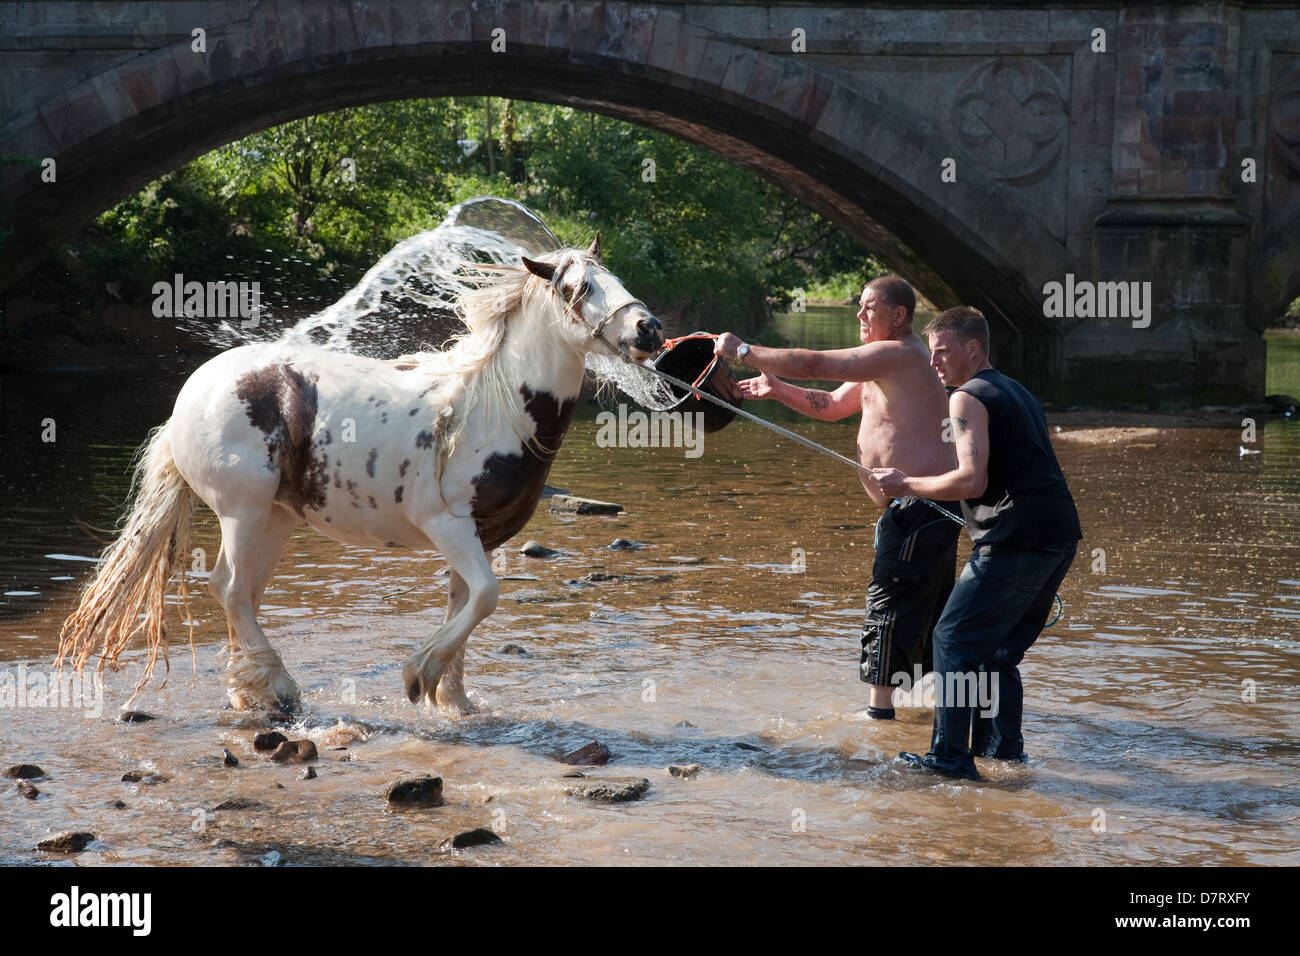 Les hommes se laver un cheval dans la rivière à l'Appleby, juste un rassemblement annuel des communautés tsiganes et voyageurs dans la région de Cumbria, Angleterre. Banque D'Images